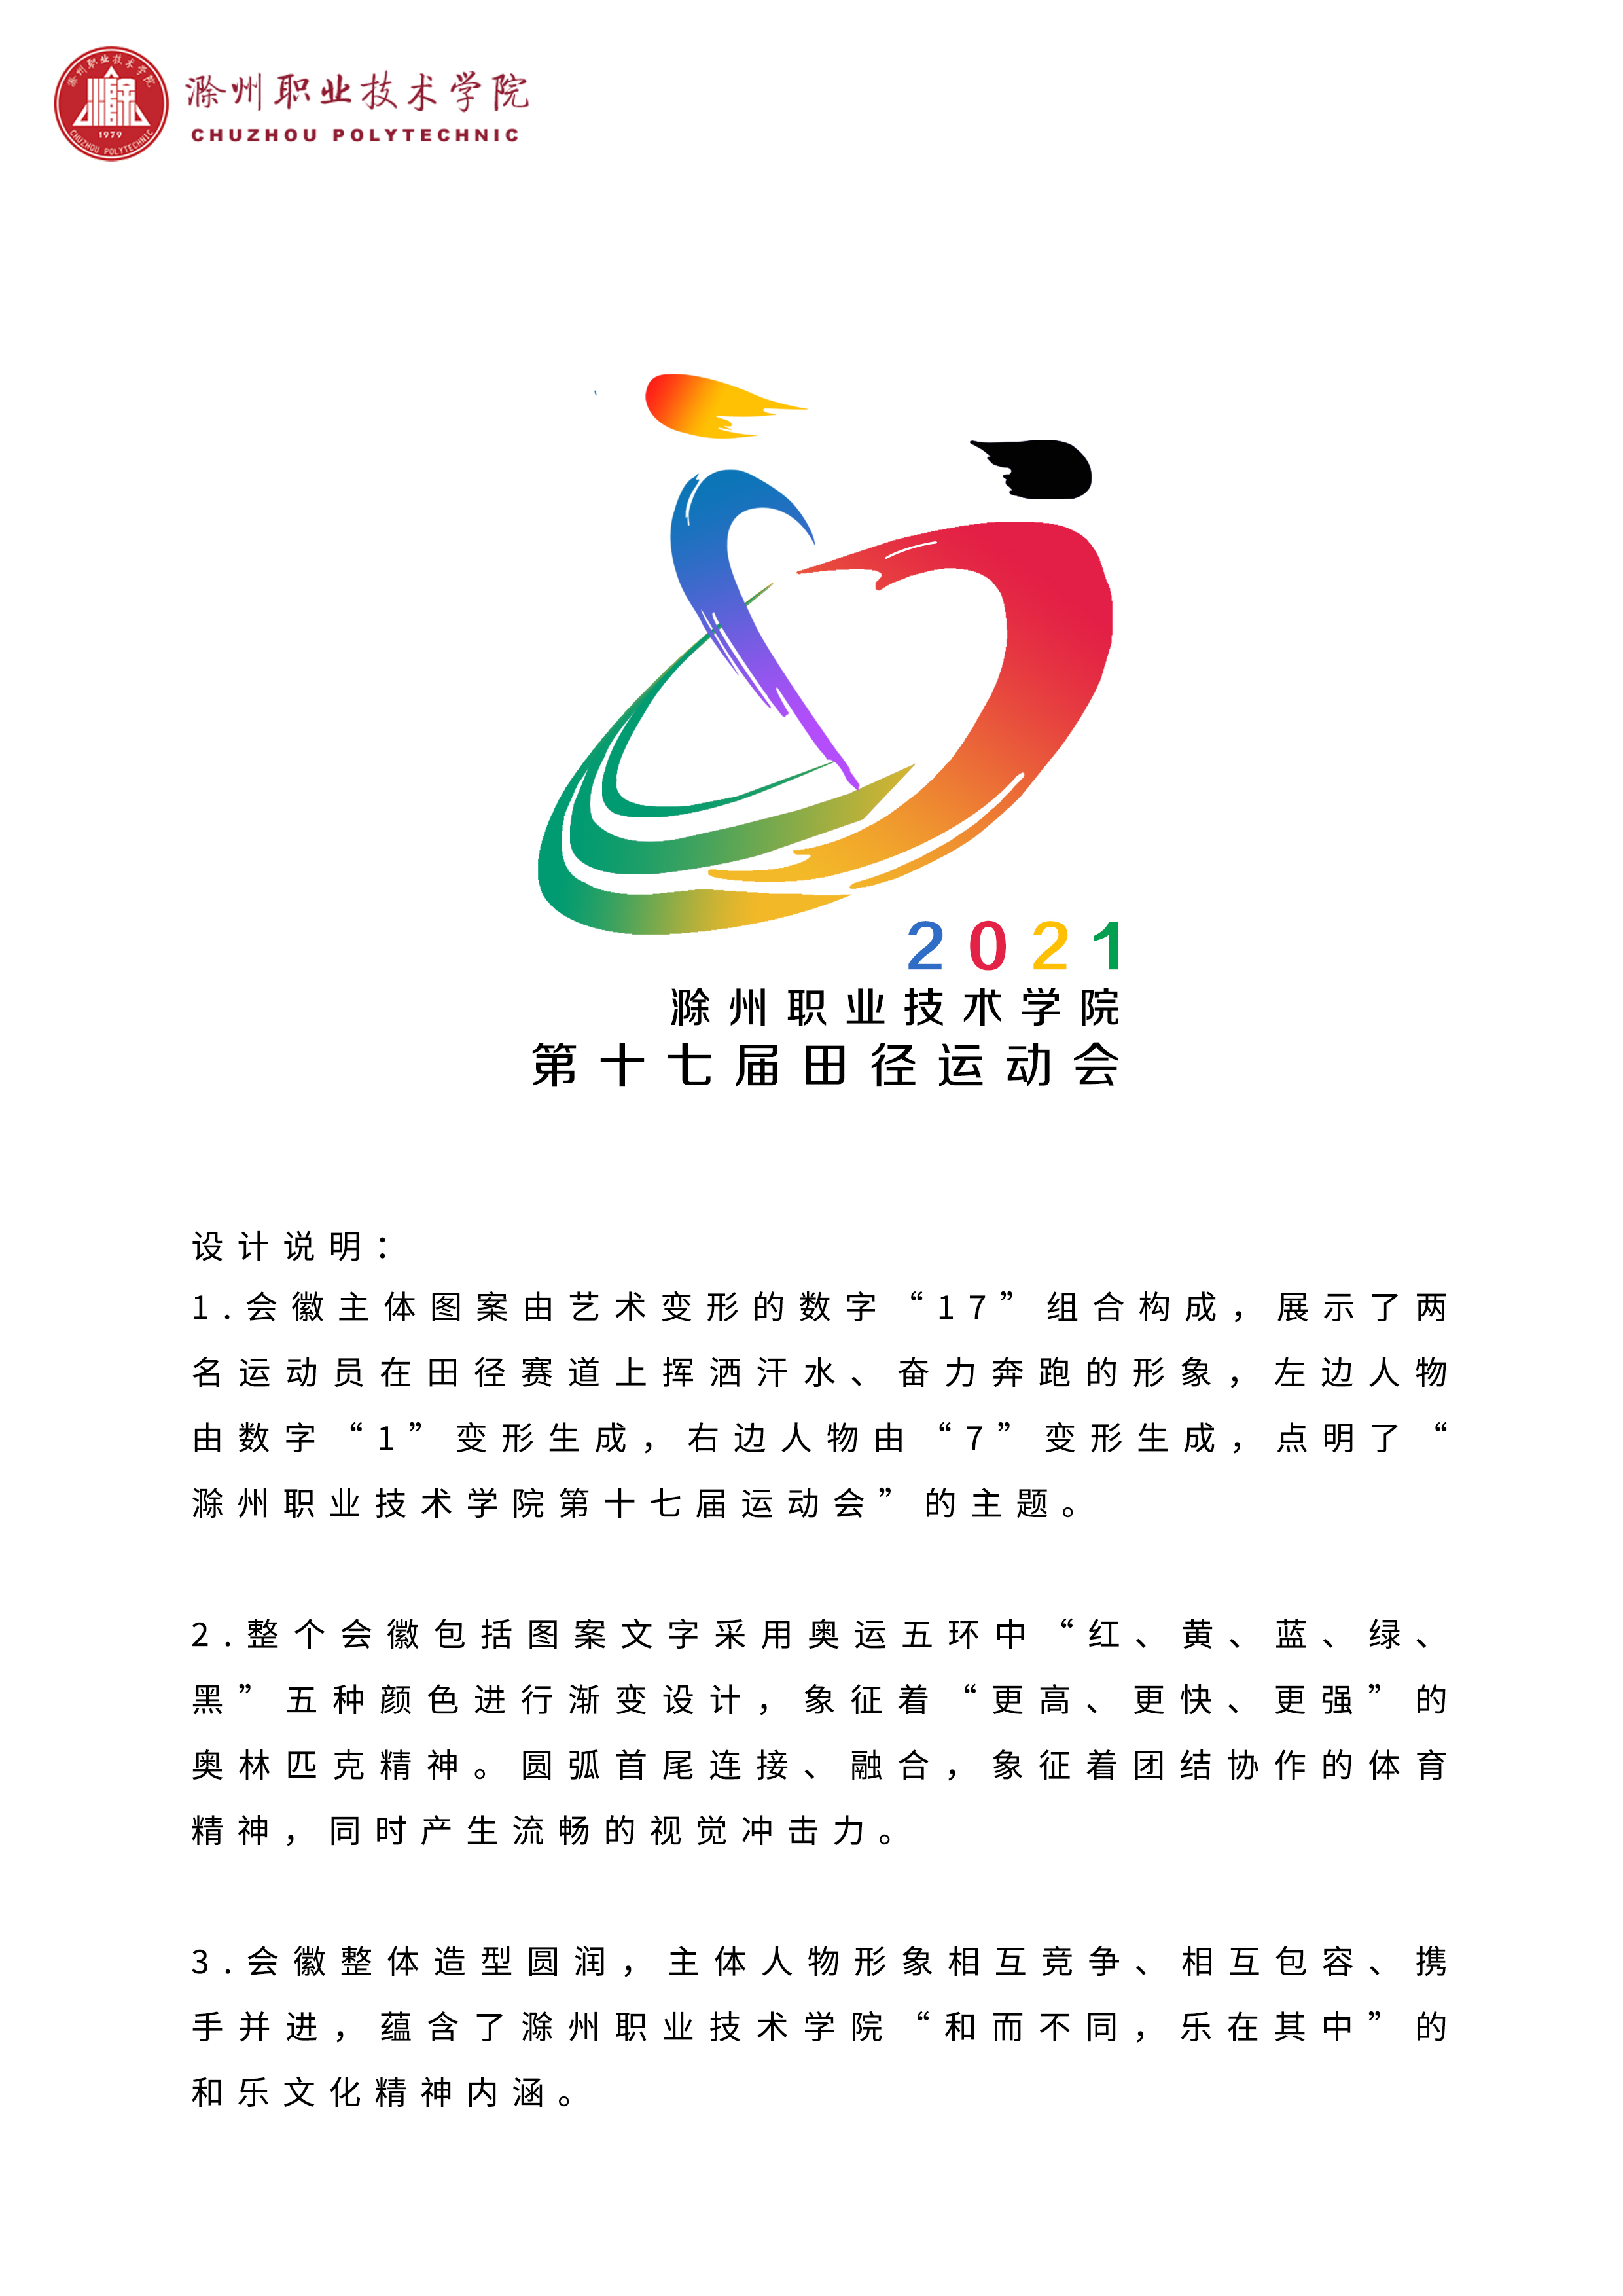 传媒与设计学院承办的2021年滁州职业技术学院第十七届田径运动会会徽